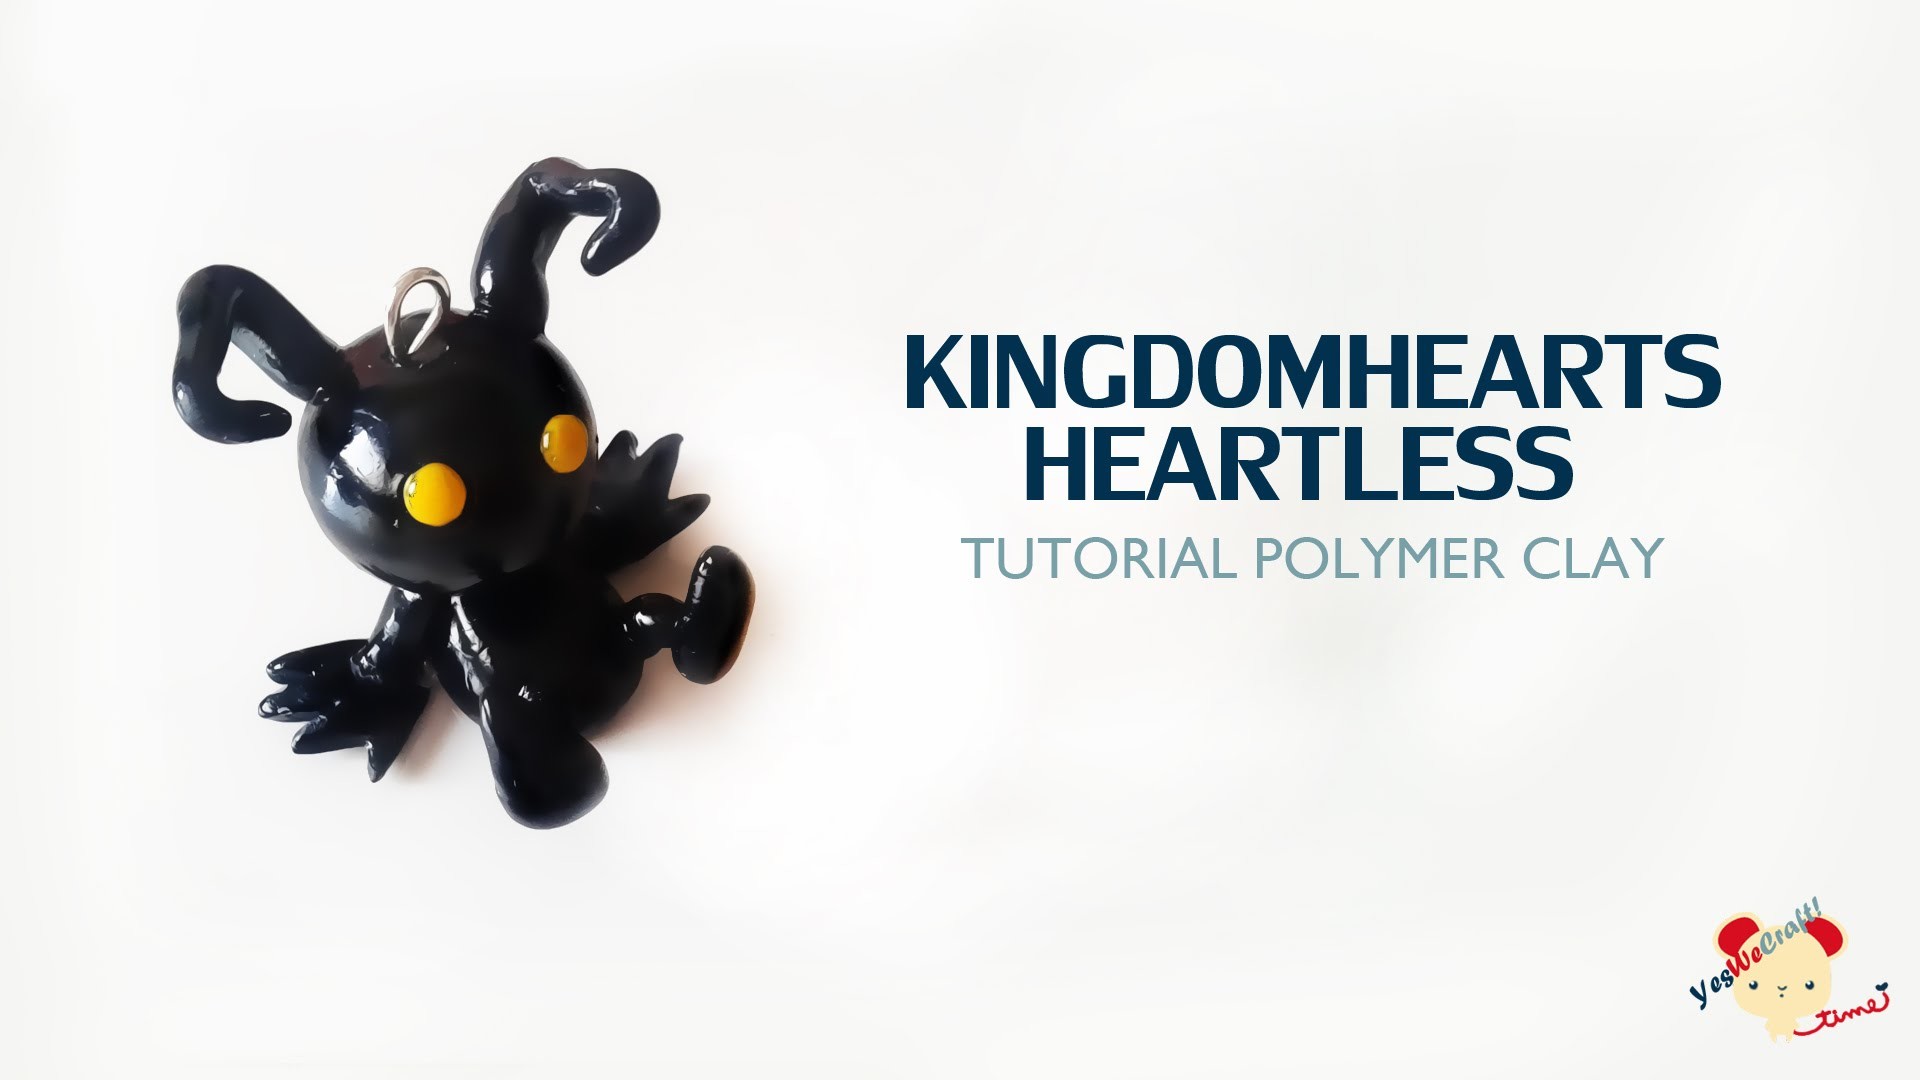 Kingdom Hearts Heartless Polymer Clay Tutorial. Sincorazón Kingdom Hearts de Arcilla Polimérica